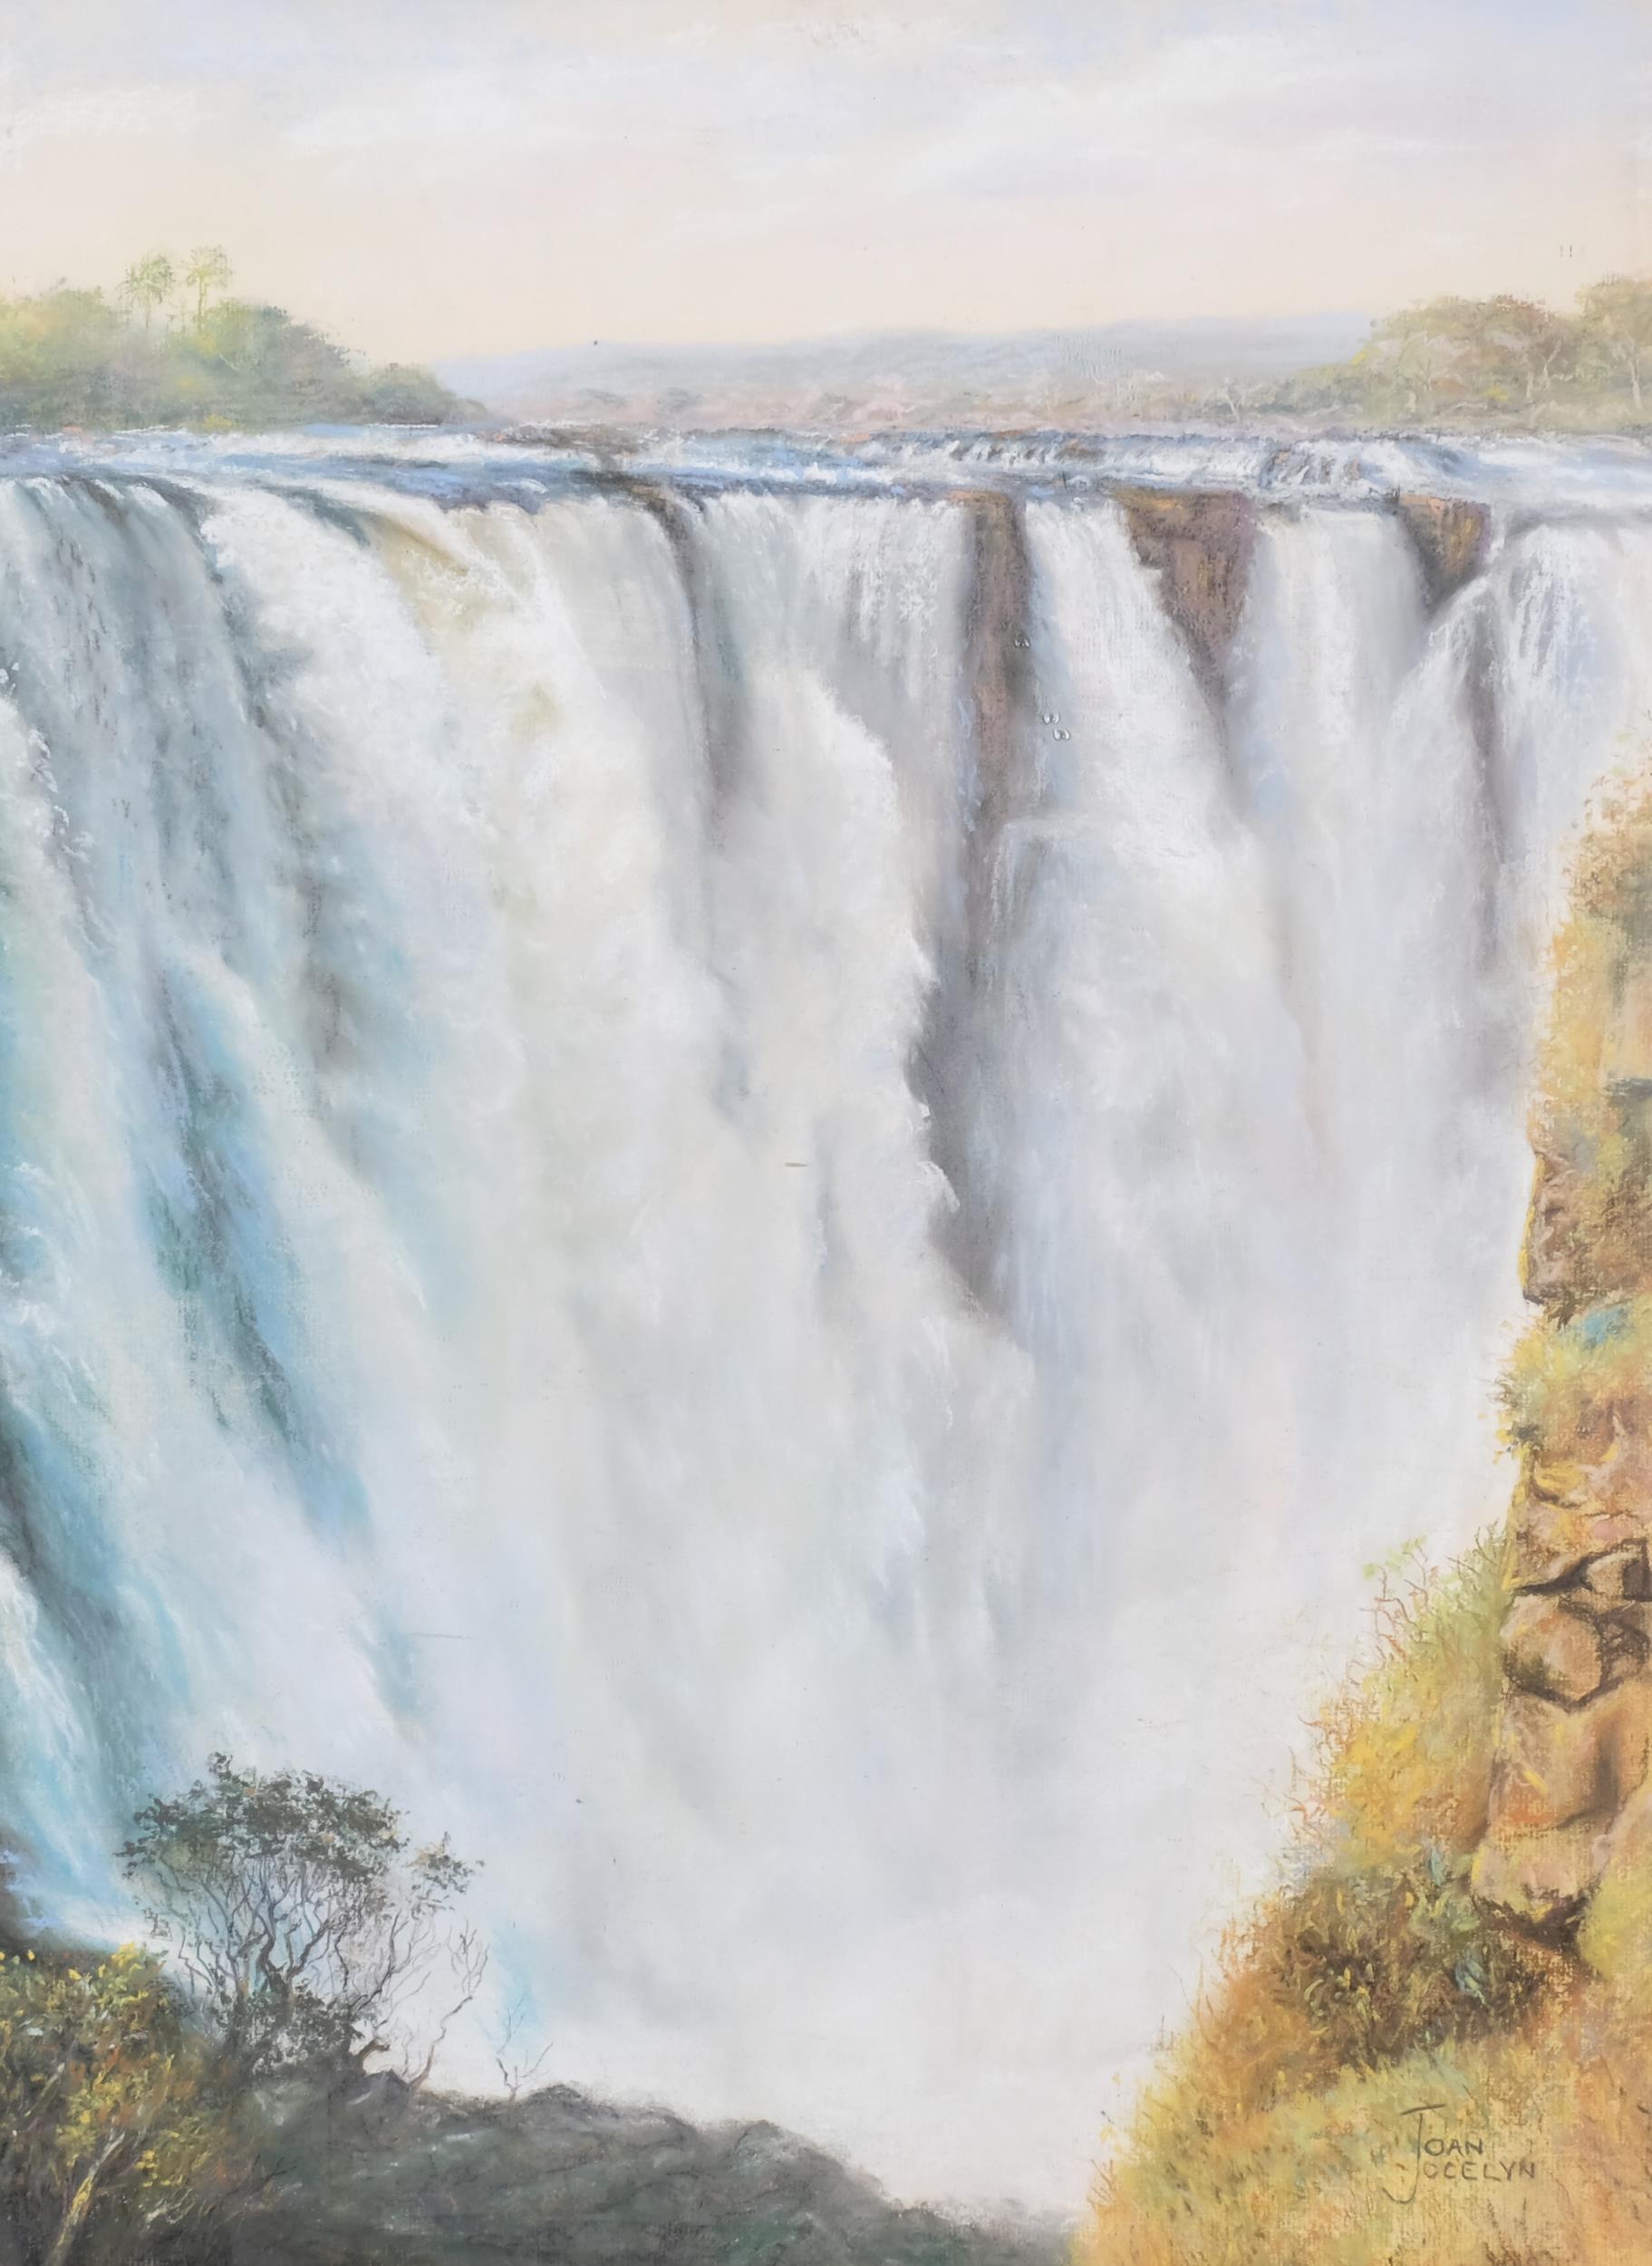 Joan Jocelyn, Victoria Falls, coloured pastels, signed, 65cm x 49cm, framed Good condition